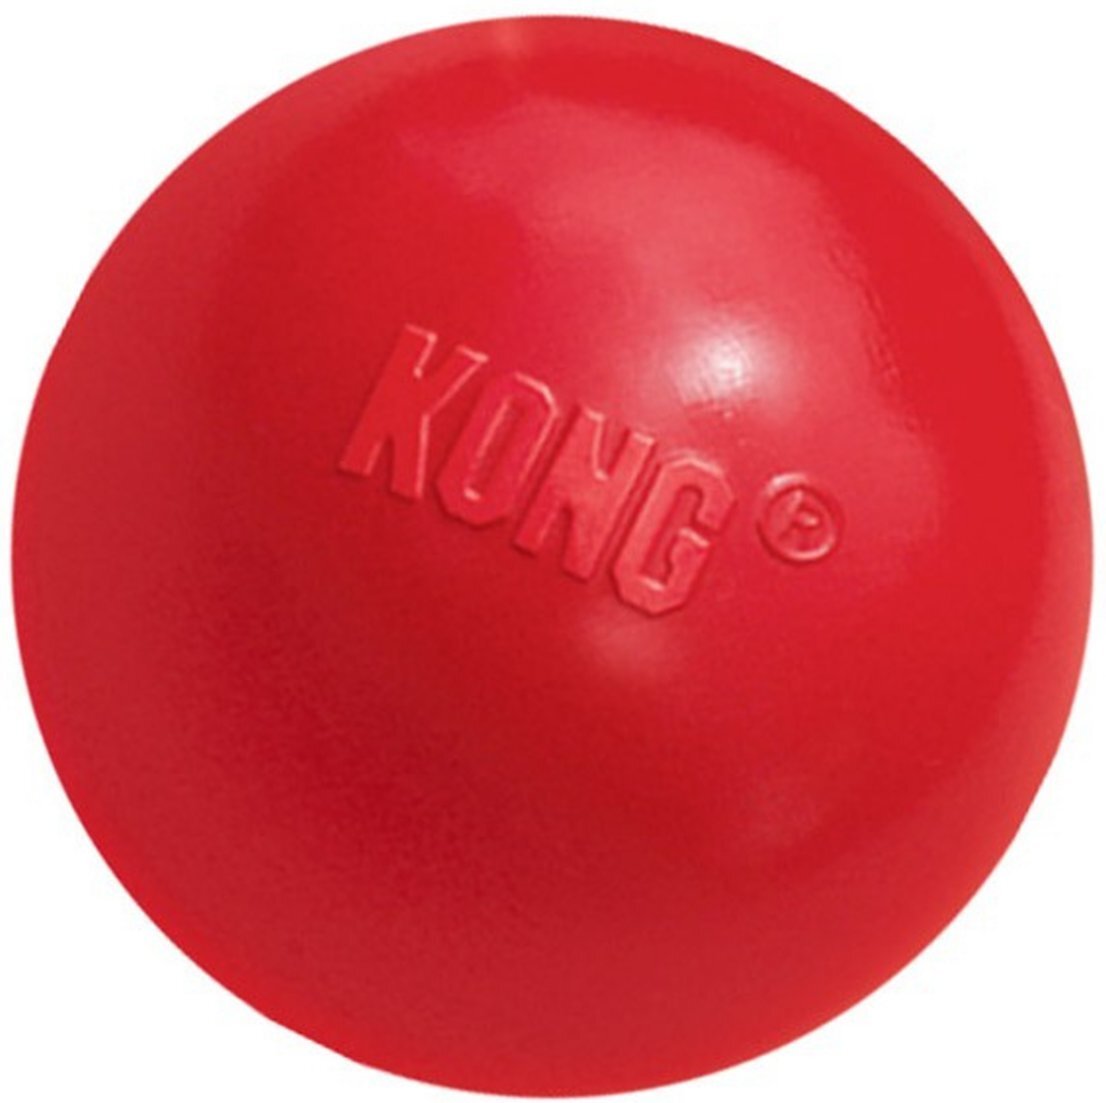 large kong ball